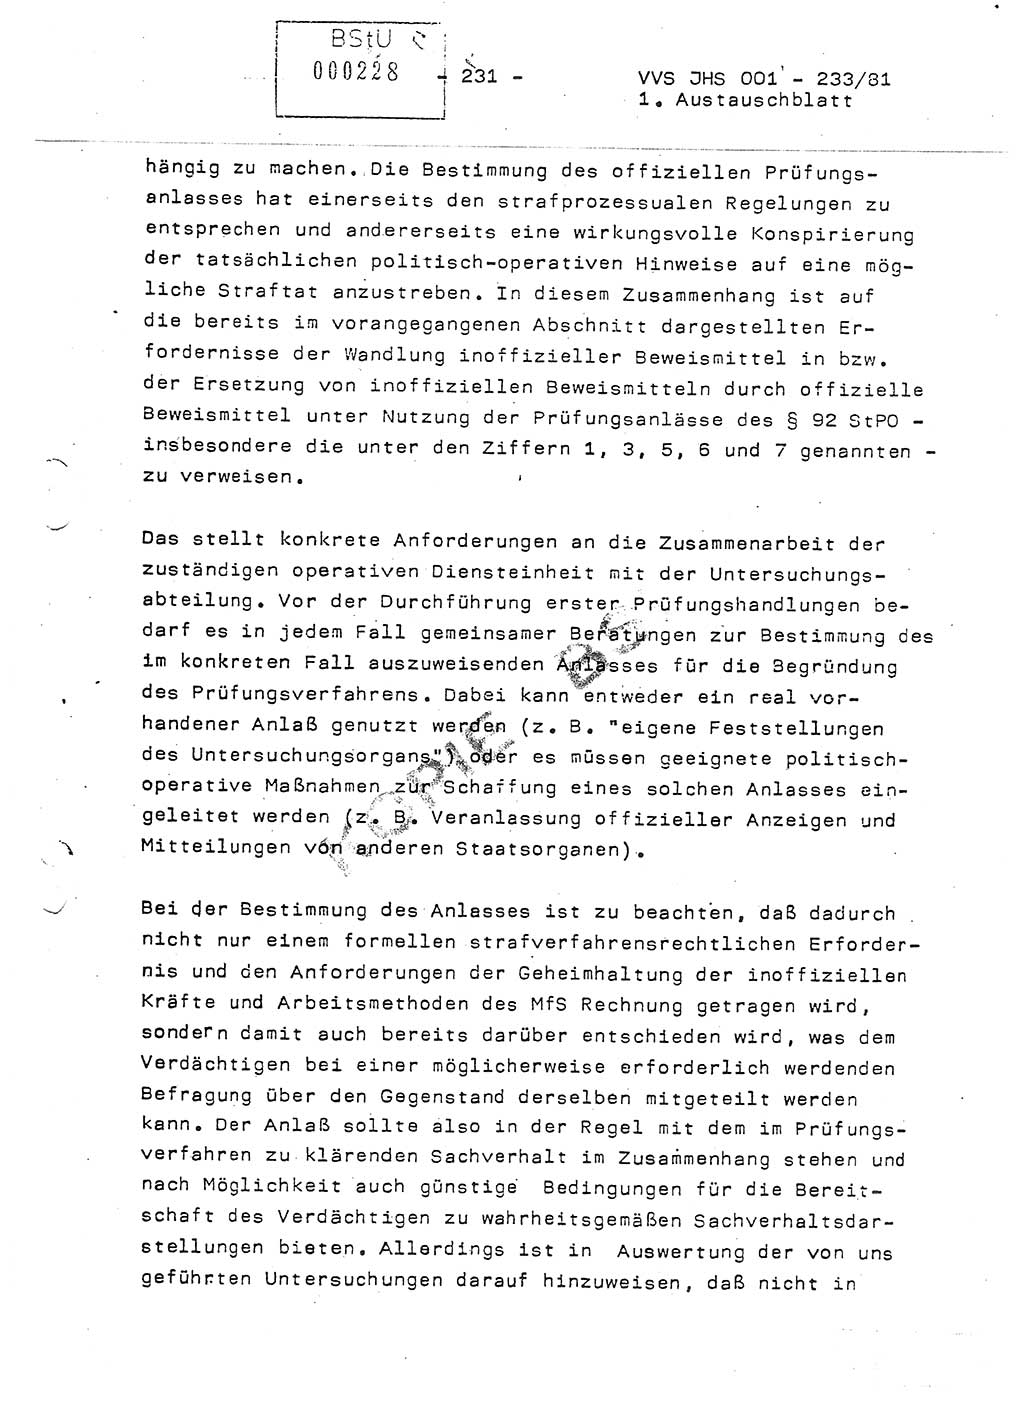 Dissertation Oberstleutnant Horst Zank (JHS), Oberstleutnant Dr. Karl-Heinz Knoblauch (JHS), Oberstleutnant Gustav-Adolf Kowalewski (HA Ⅸ), Oberstleutnant Wolfgang Plötner (HA Ⅸ), Ministerium für Staatssicherheit (MfS) [Deutsche Demokratische Republik (DDR)], Juristische Hochschule (JHS), Vertrauliche Verschlußsache (VVS) o001-233/81, Potsdam 1981, Blatt 231 (Diss. MfS DDR JHS VVS o001-233/81 1981, Bl. 231)